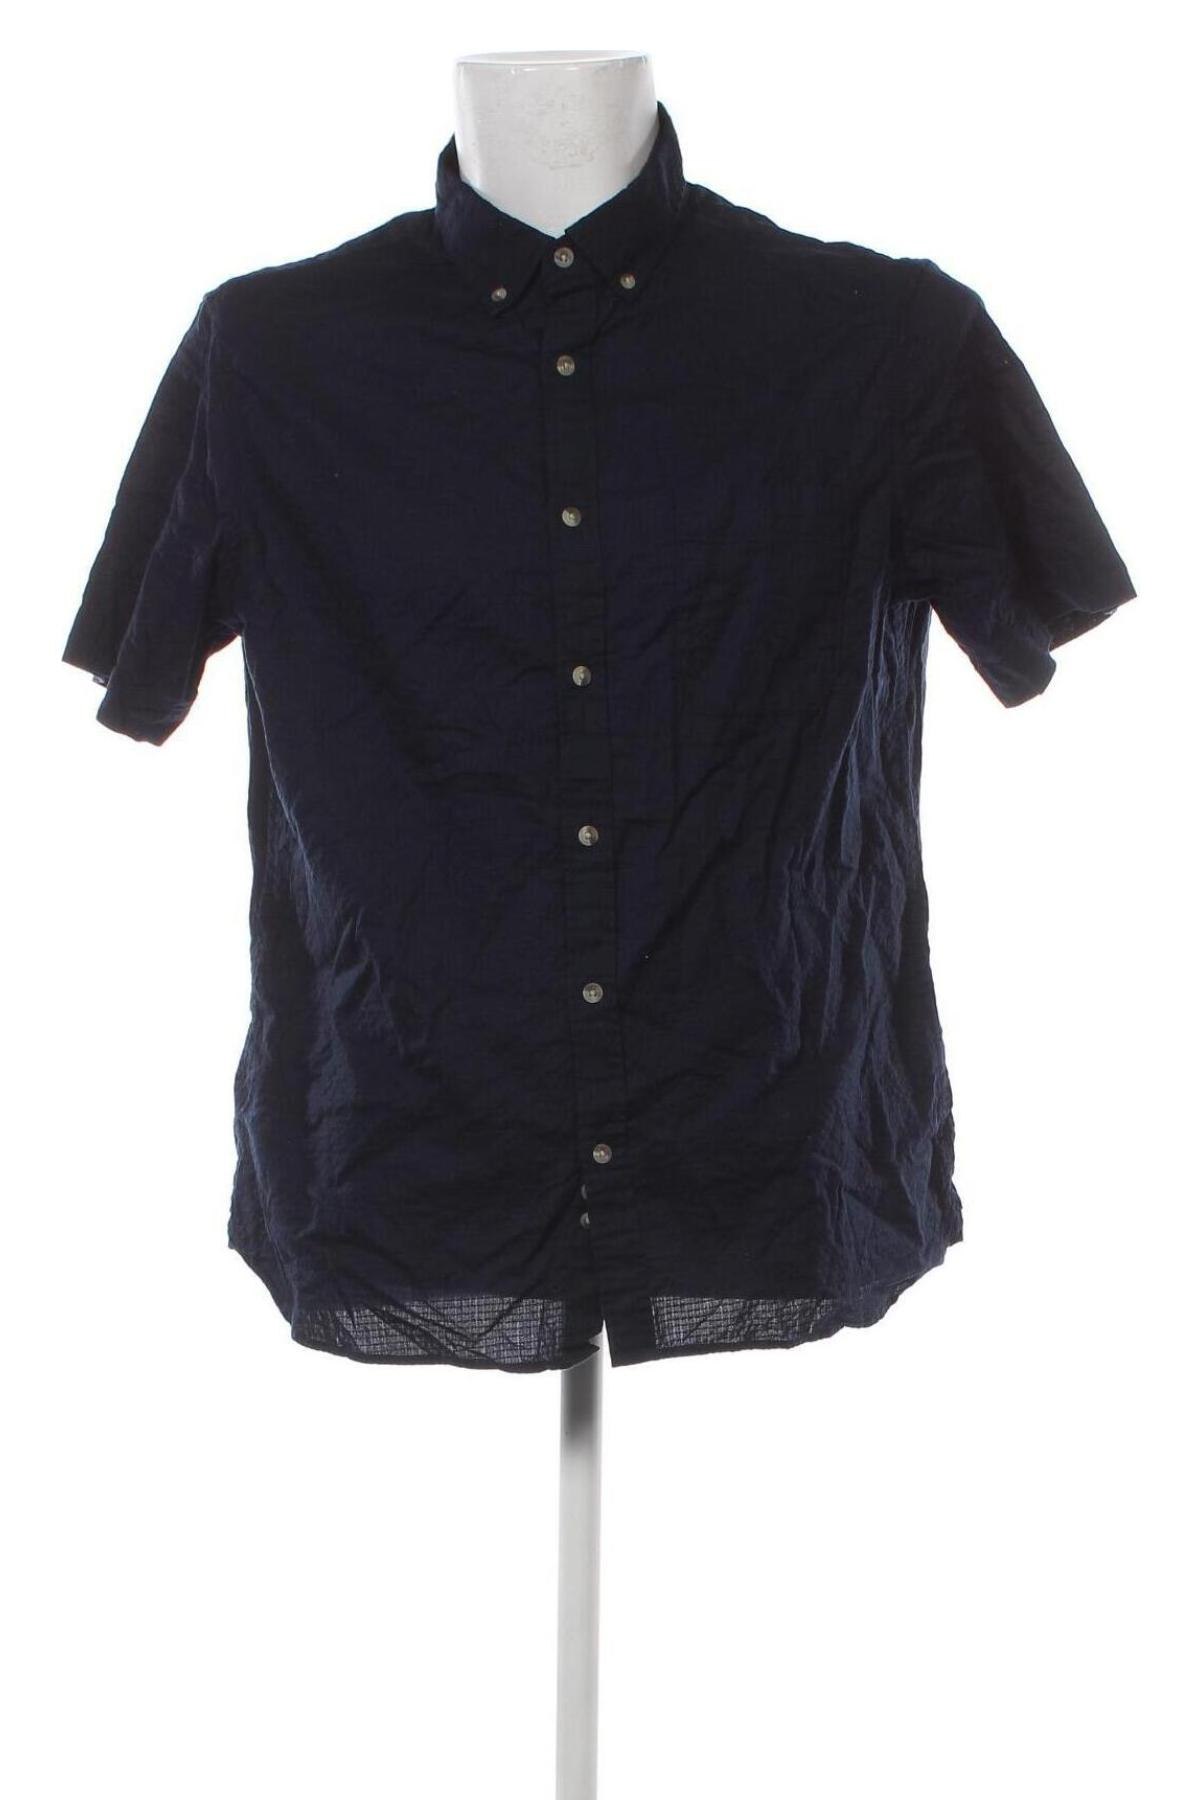 Ανδρικό πουκάμισο Canda, Μέγεθος L, Χρώμα Μπλέ, Τιμή 8,25 €